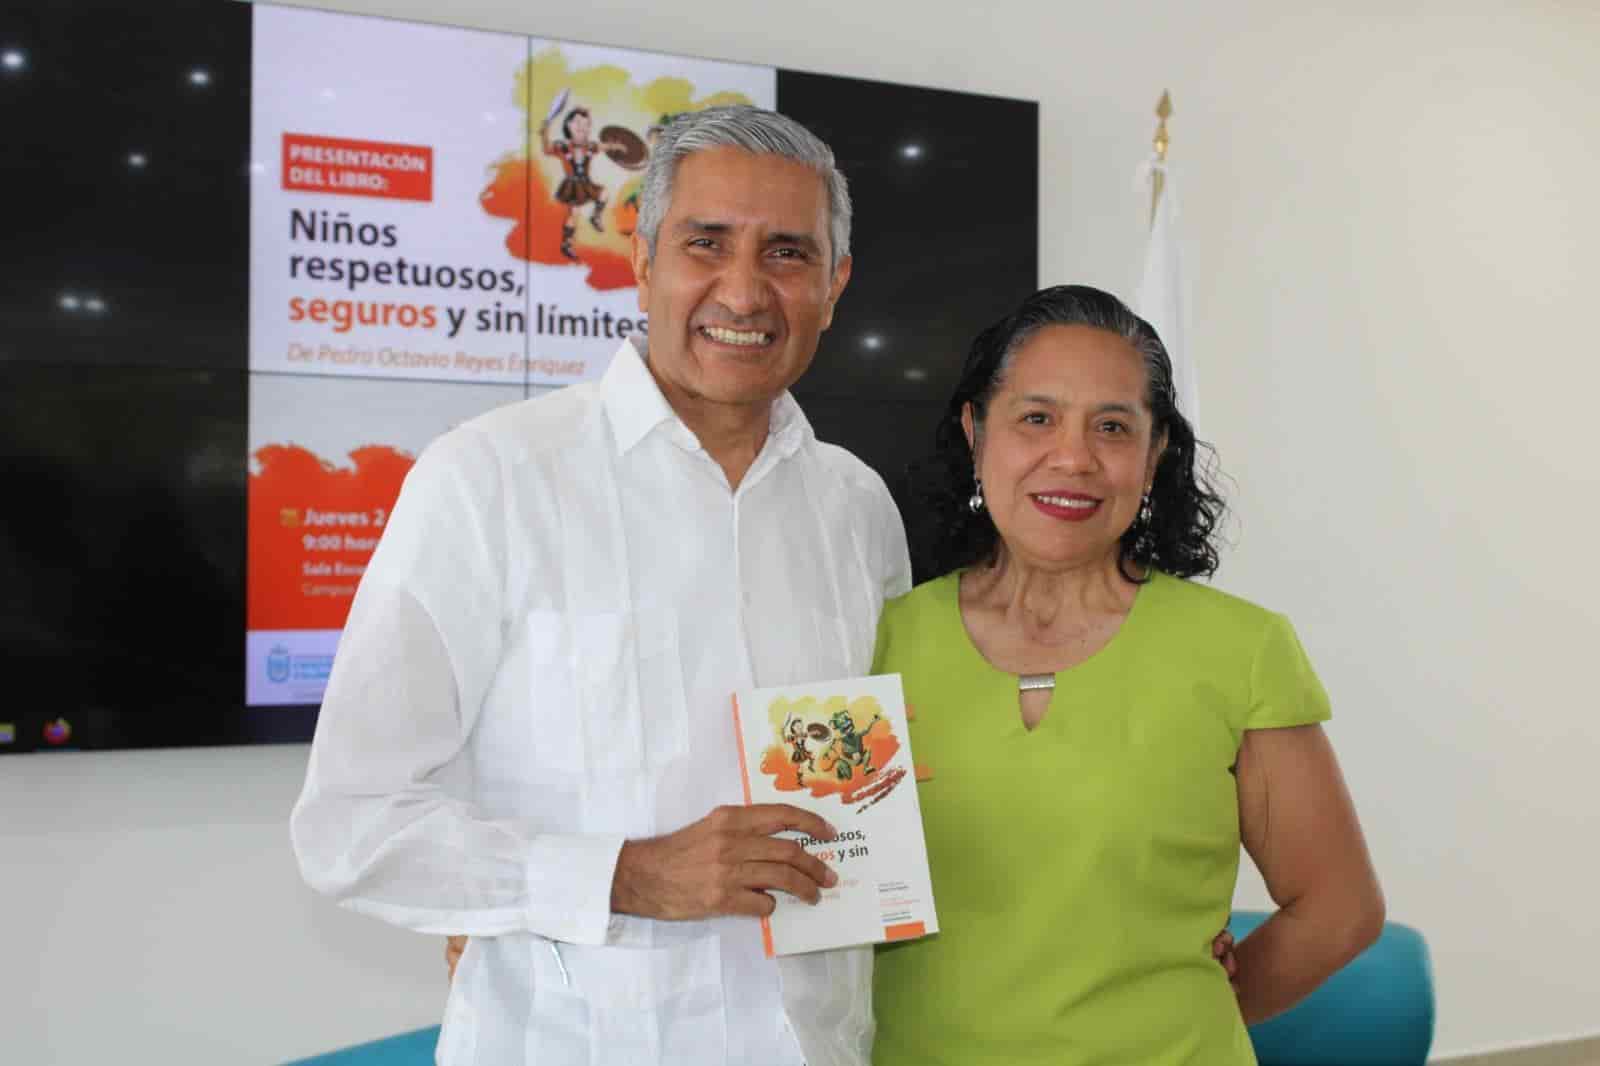 Presentan el libro “Niños respetuosos, seguros y sin límites”, en Veracruz